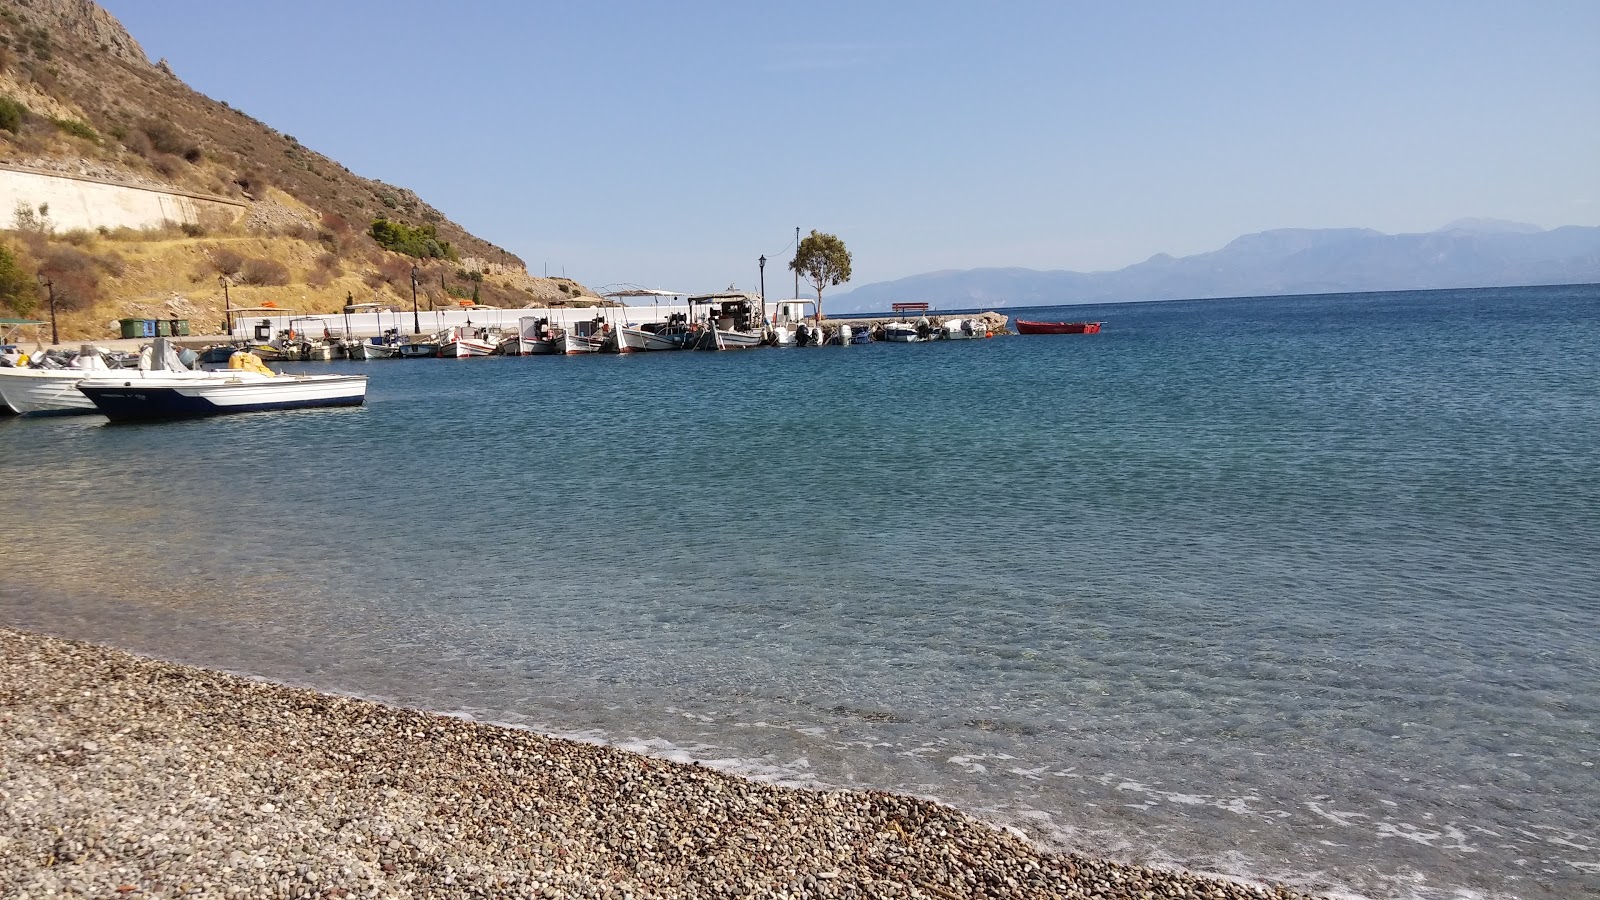 Agios Panton beach'in fotoğrafı geniş ile birlikte